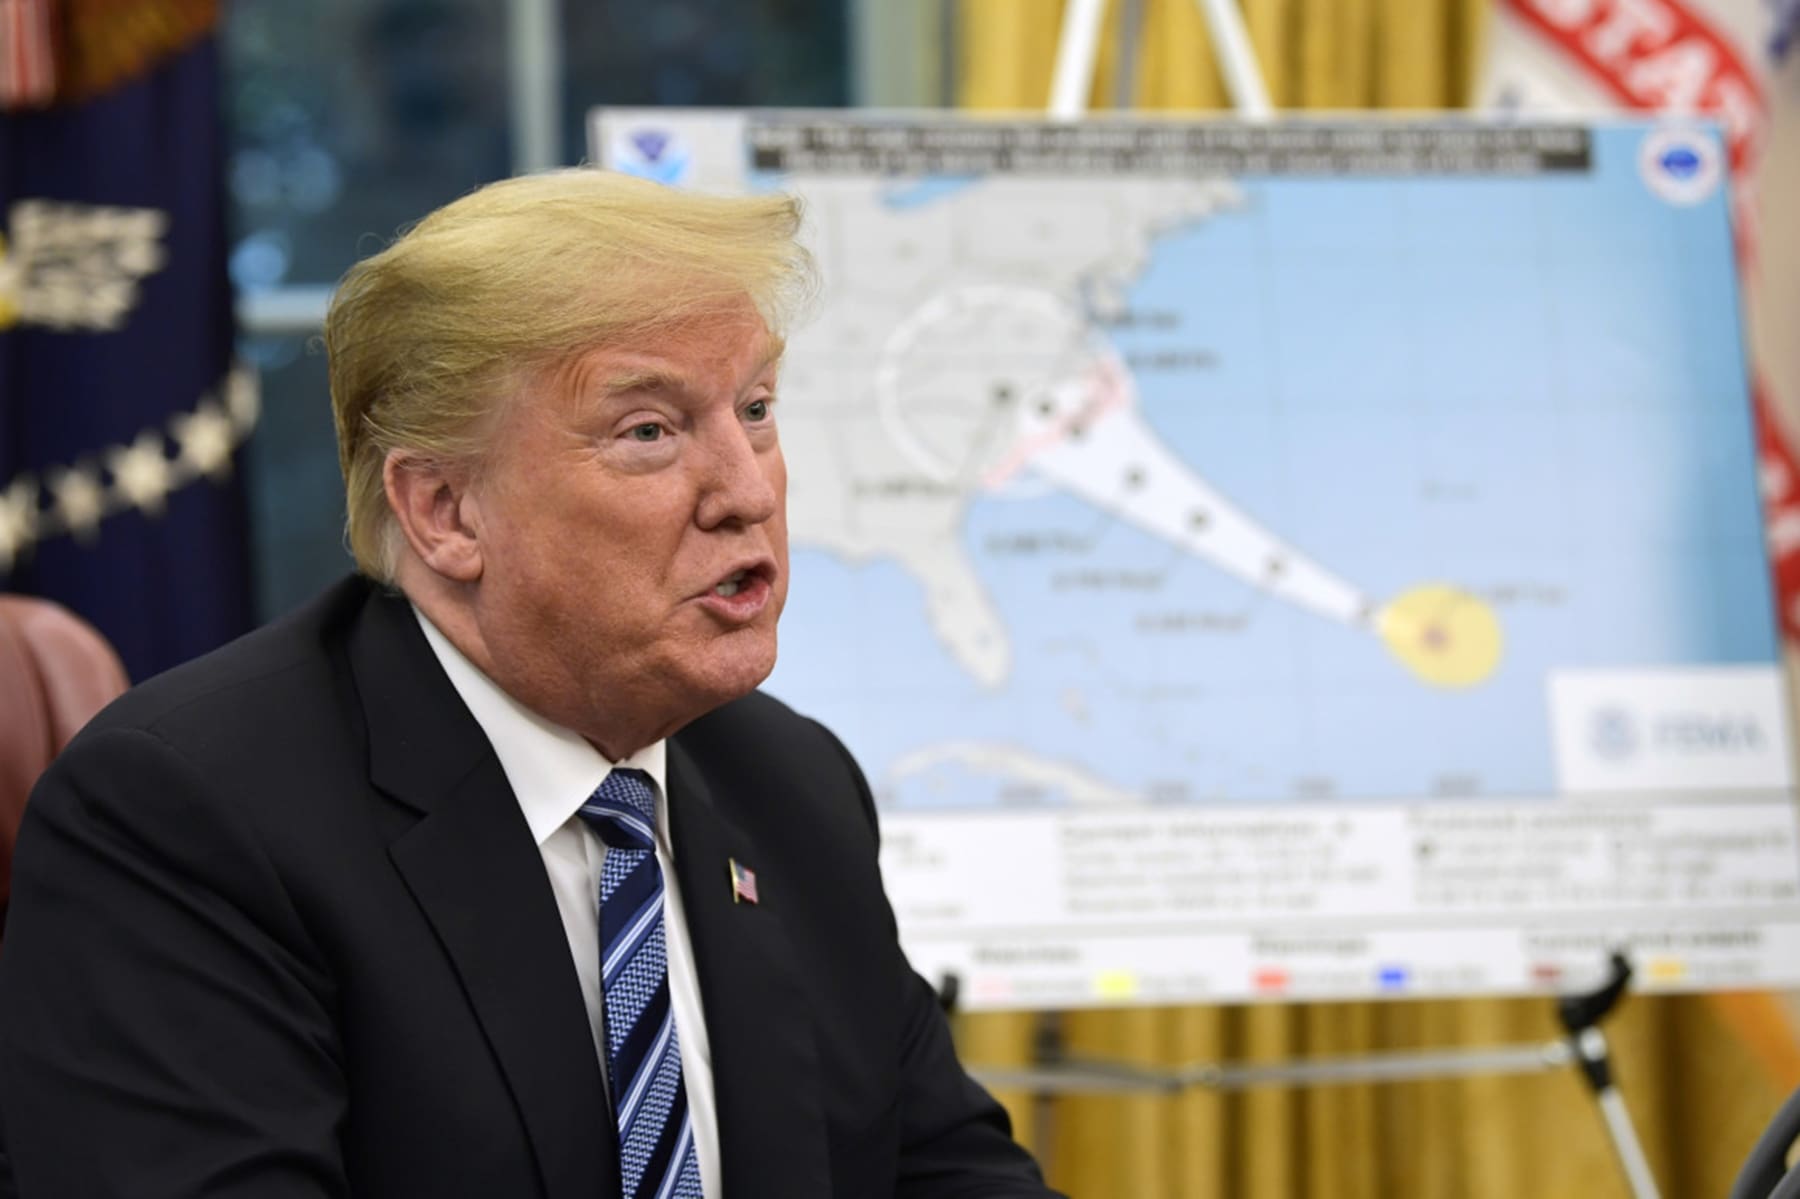 Donald Trump Nuking Hurricanes Hoax